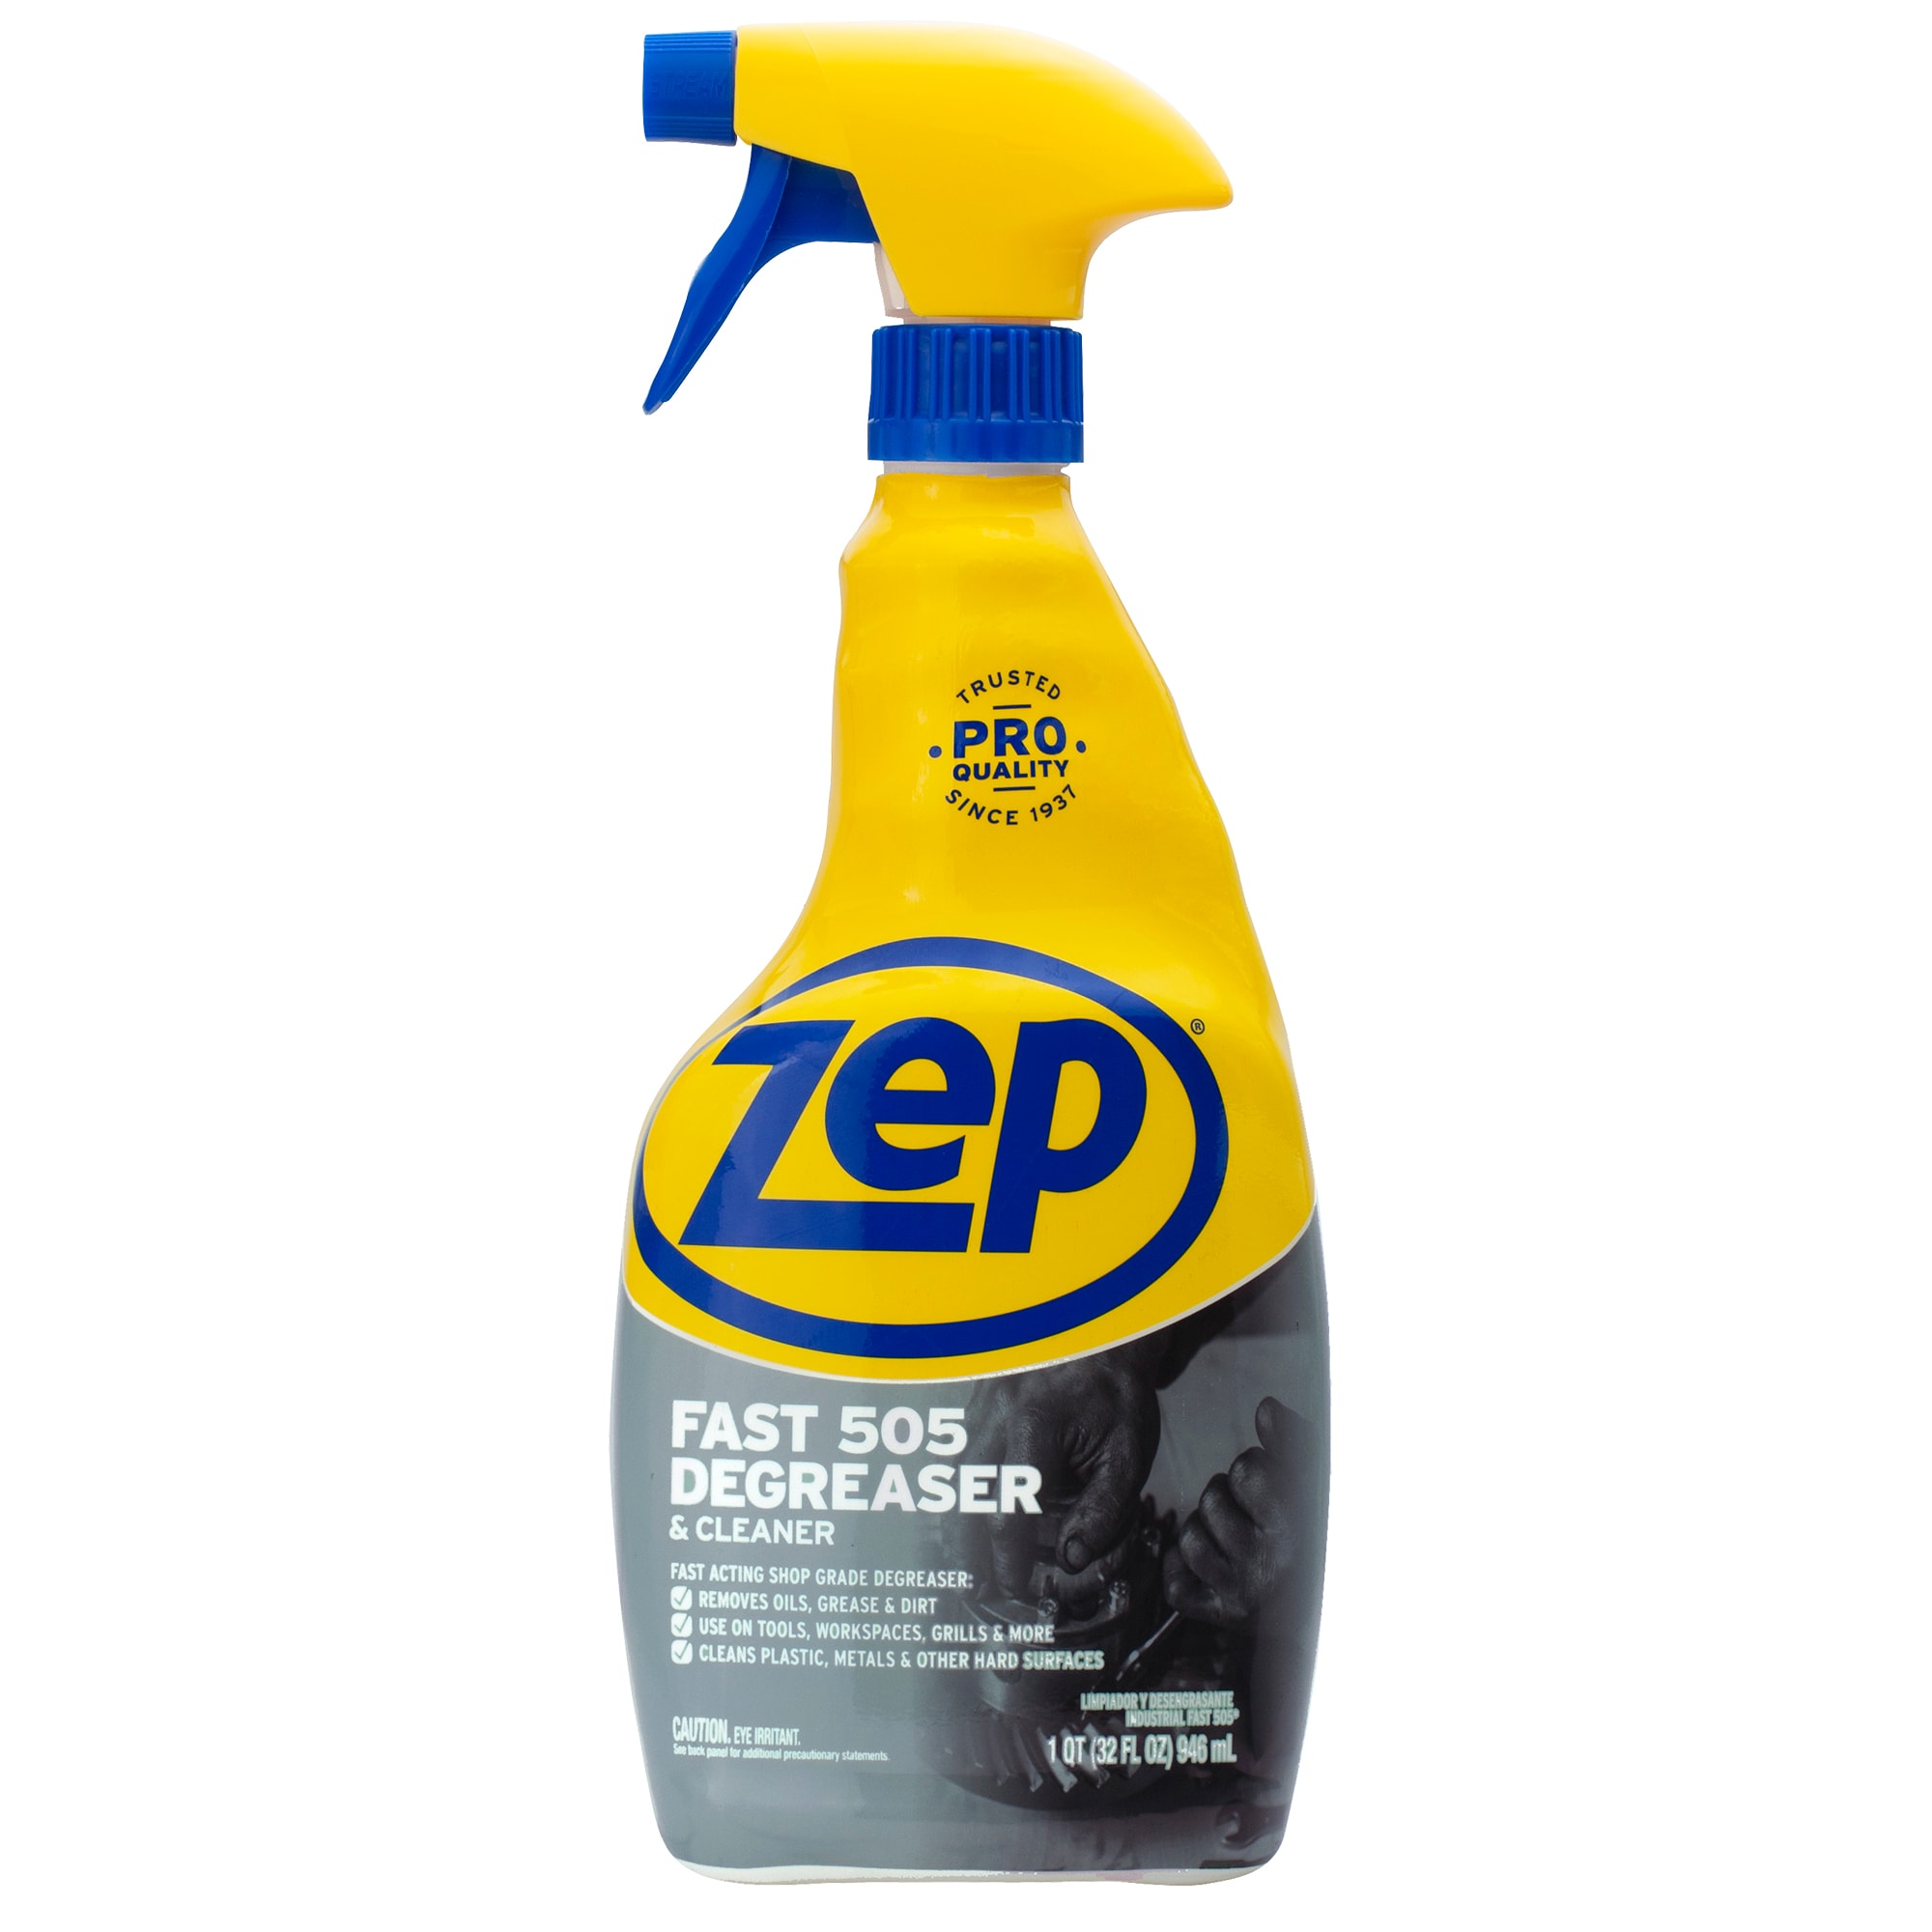 Zep Degreaser & Cleaner, Fast 505, Shop